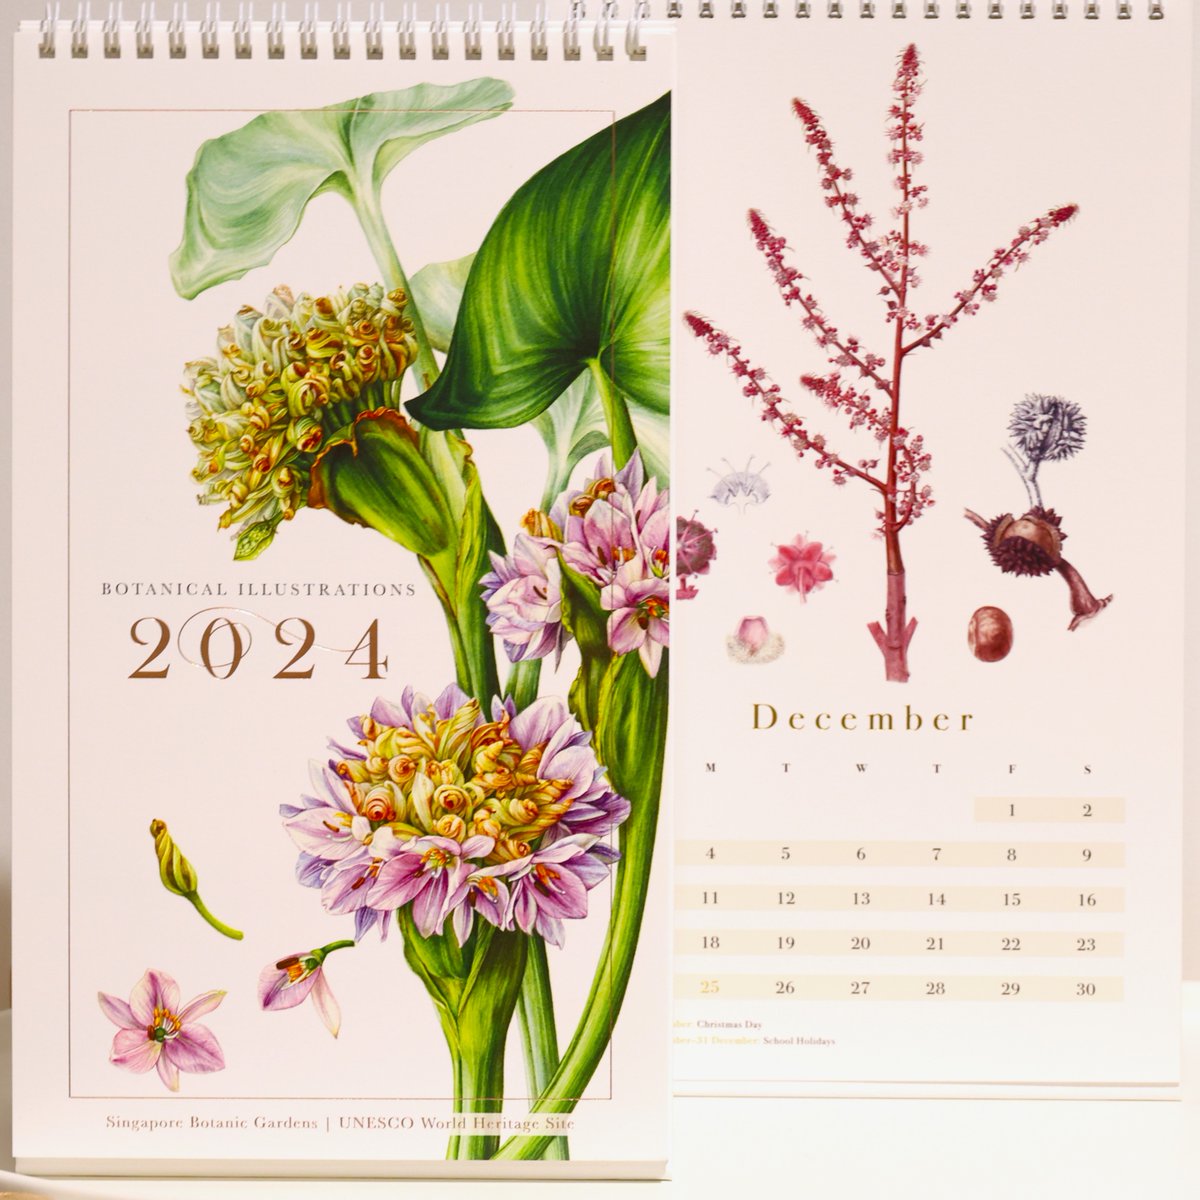 シンガポール植物園の
2024年カレンダー買いました！

うしろ（右）は今使ってる今年のカレンダー
すてきな植物の絵柄で癒されます！
🥰🥰🥰
#botanicgarden